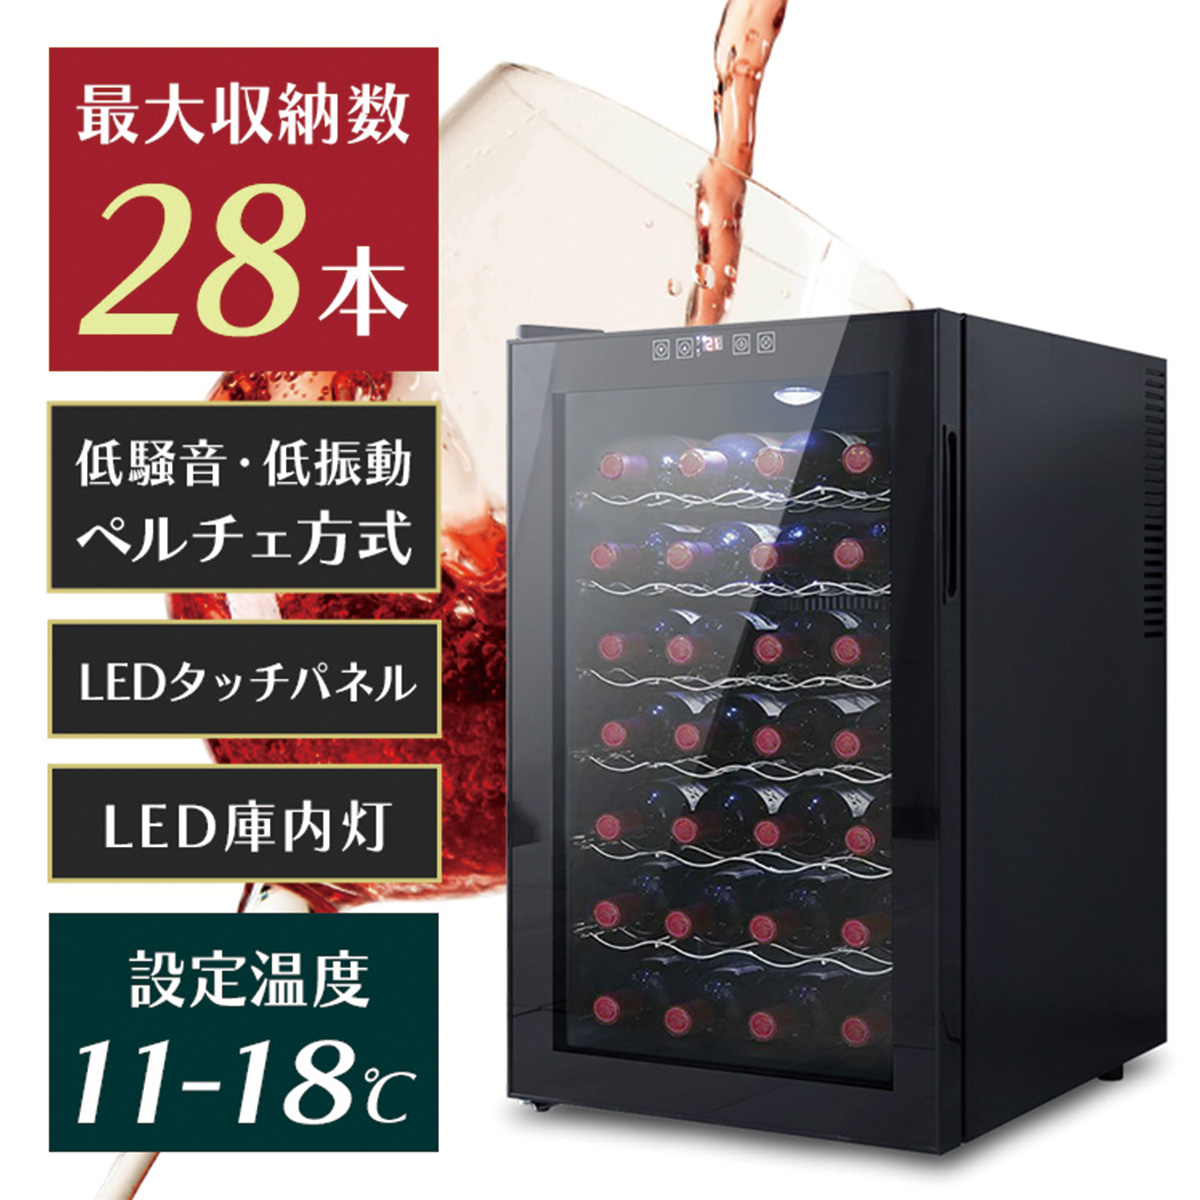 ワインセラー 家庭用 28本収納 70L ワインラック ワインクーラー タッチパネル LED表示 ペルチェ方式 温度調節機能付き ワイン保管 冷蔵庫  母の日 WEIMALL